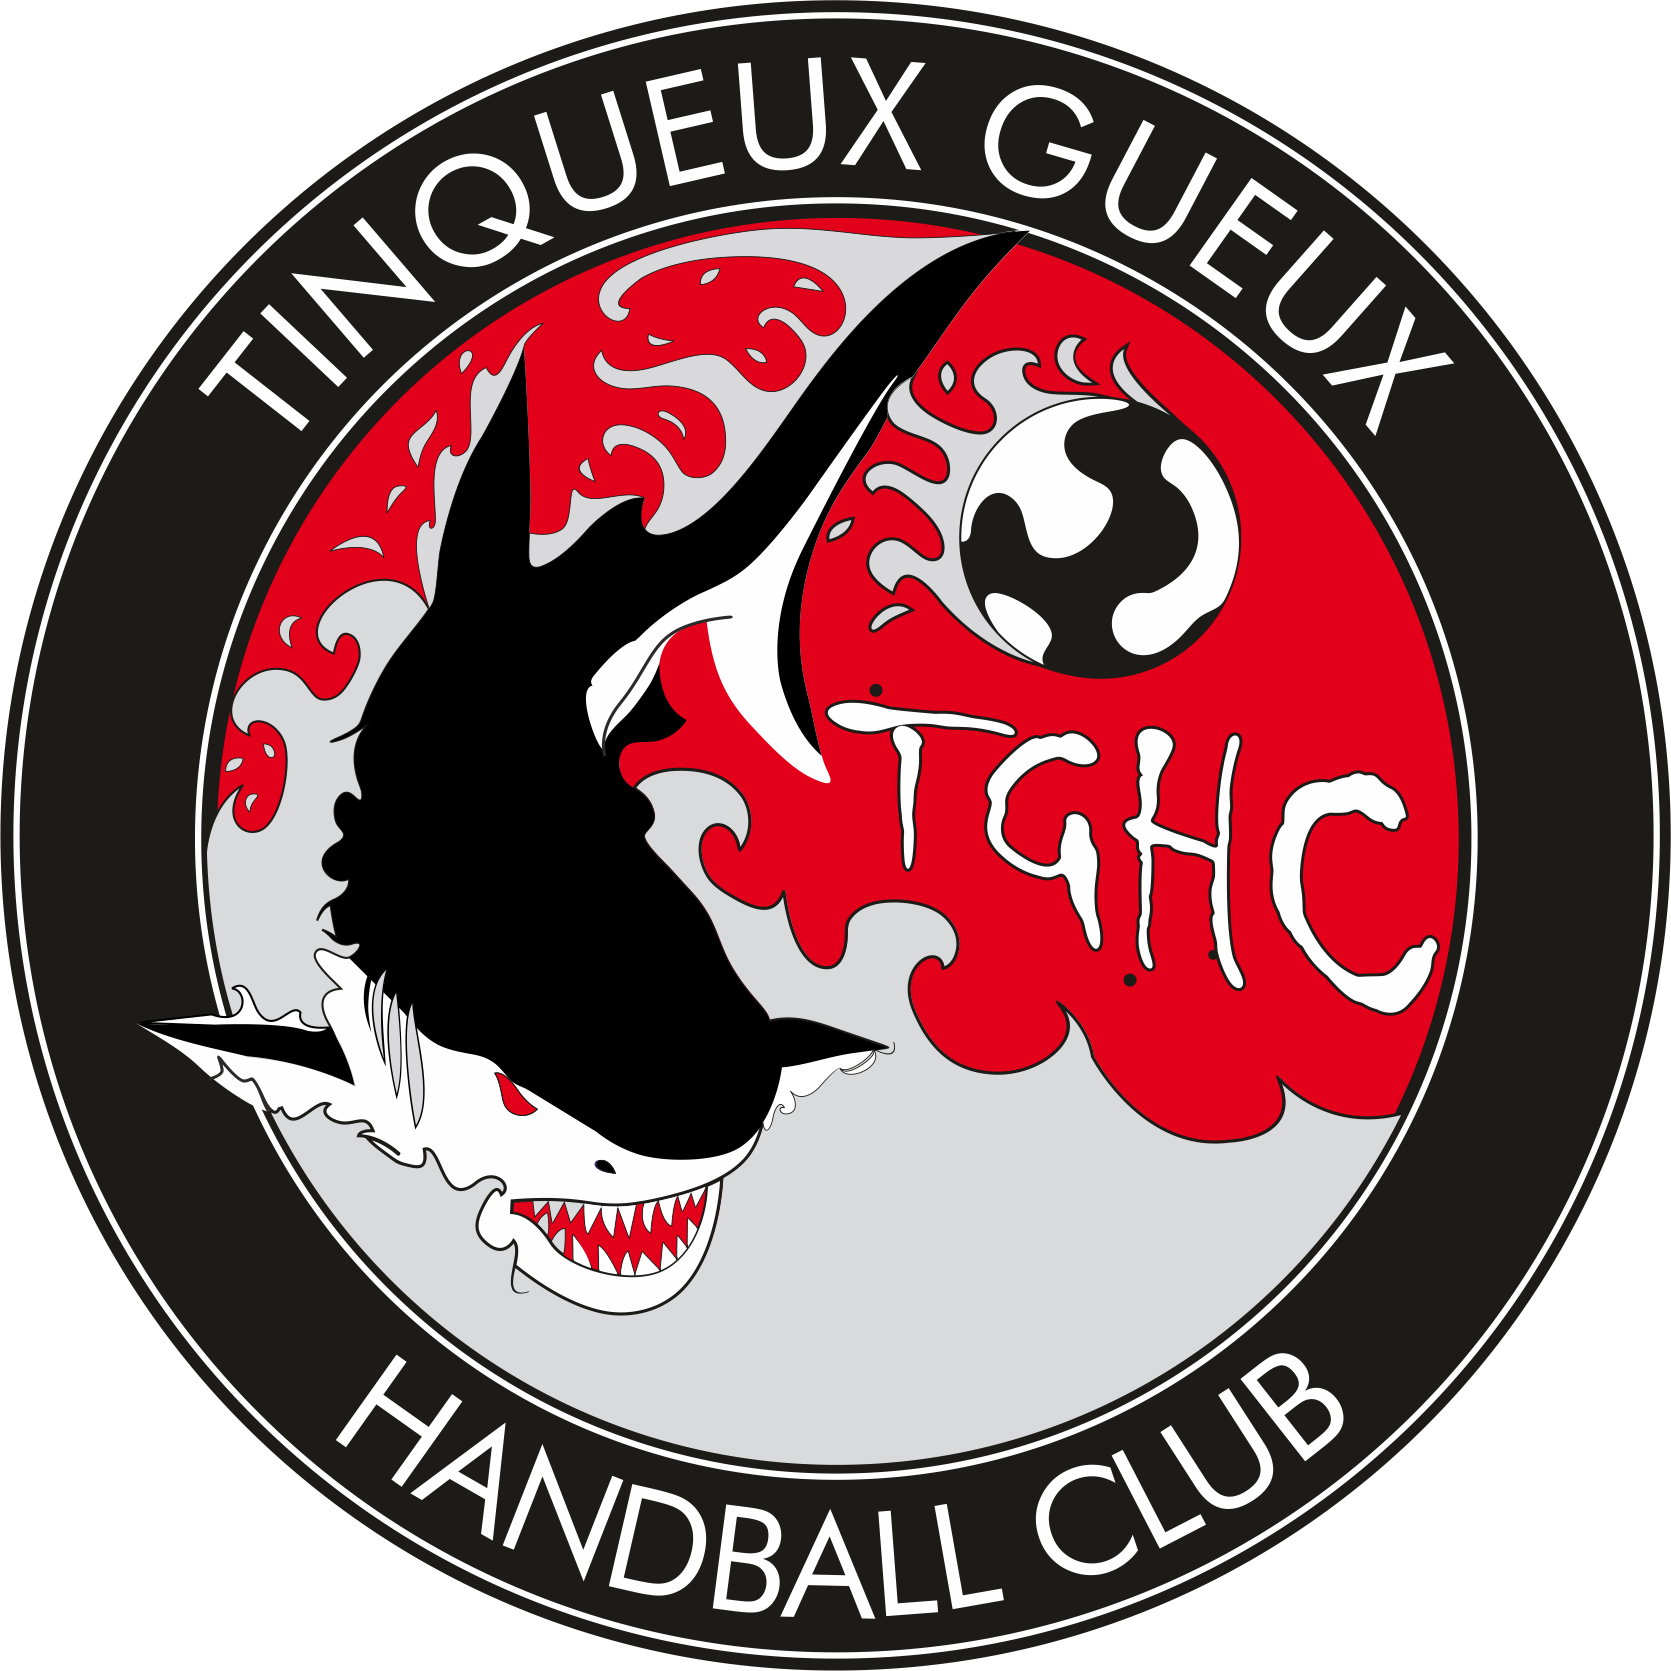 TINQUEUX GUEUX HANDBALL CLUB Logo